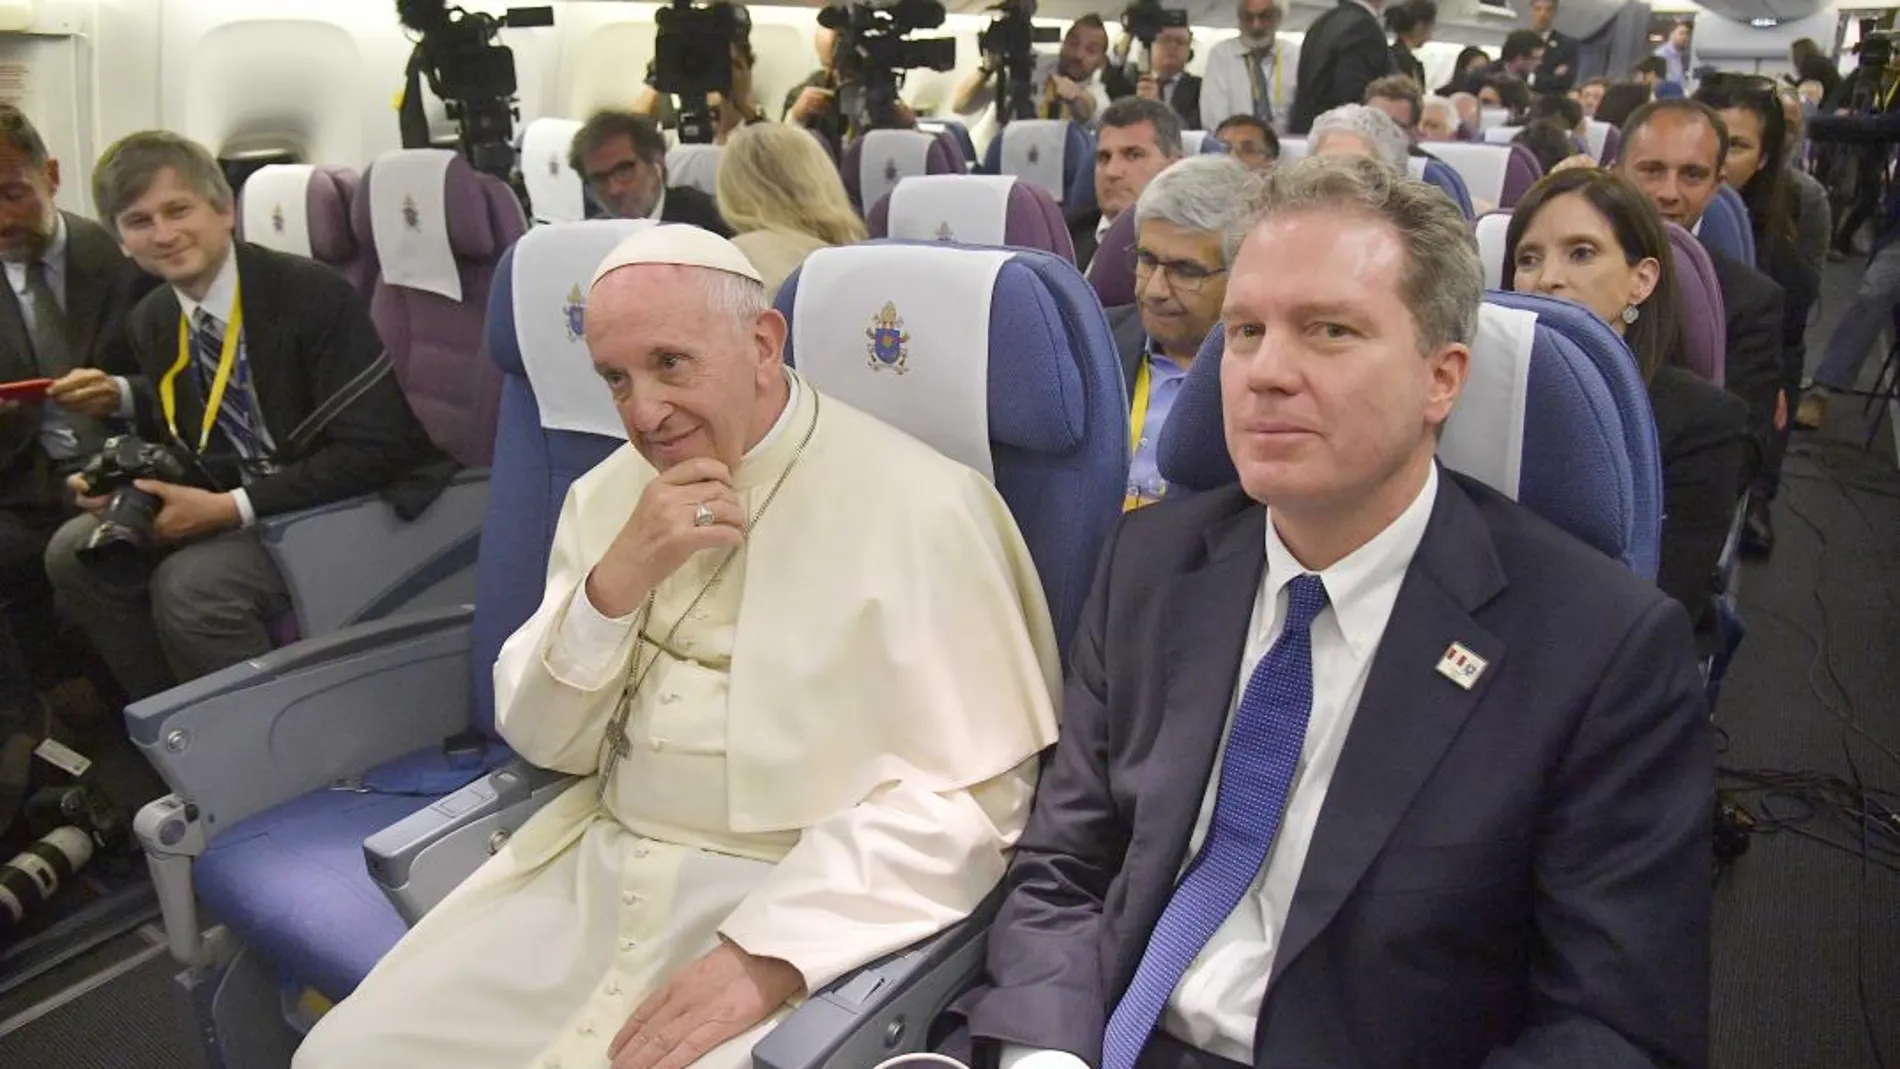 El Papa condena con firmeza los abusos sexuales en la Iglesia